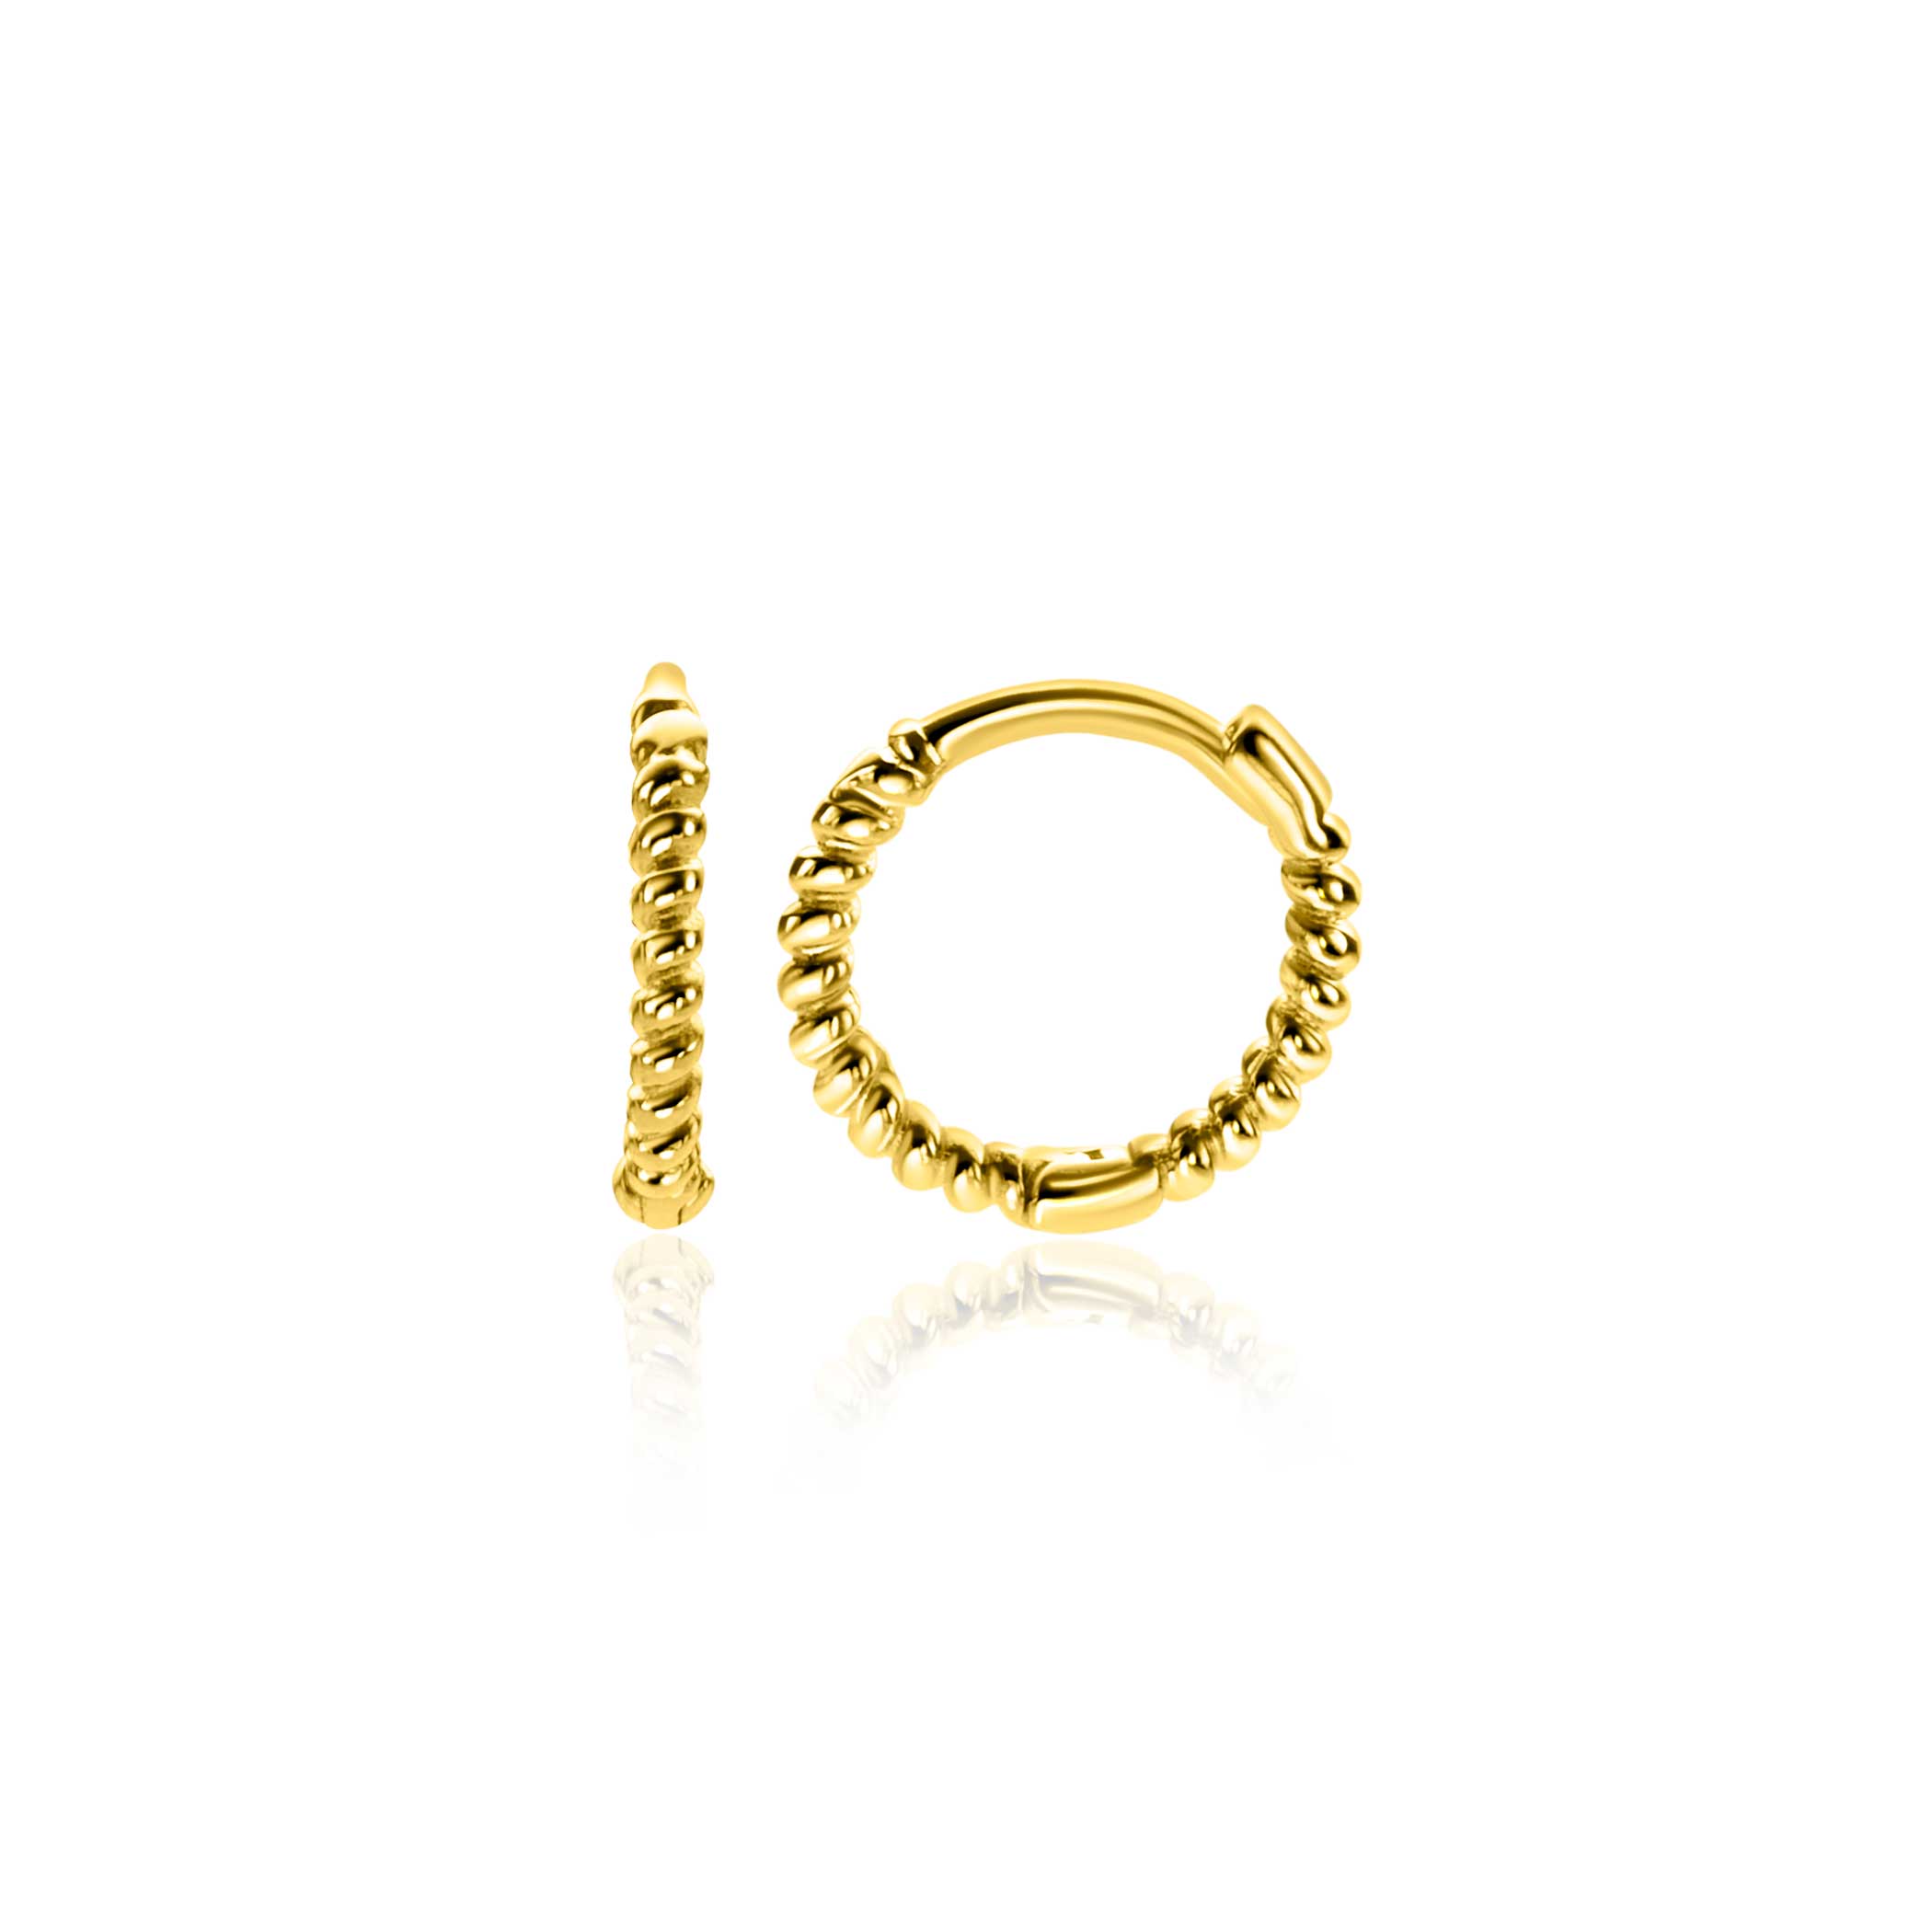 ZINZI Gold 14 krt gouden oorringen (10mm) met gedraaide buis en voorzien van een luxe scharniersluiting. De oorringen zijn 10mm lang en hebben een buisbreedte van 1,3mm. Vervaardigd van geheel 14 karaat goud (585).

